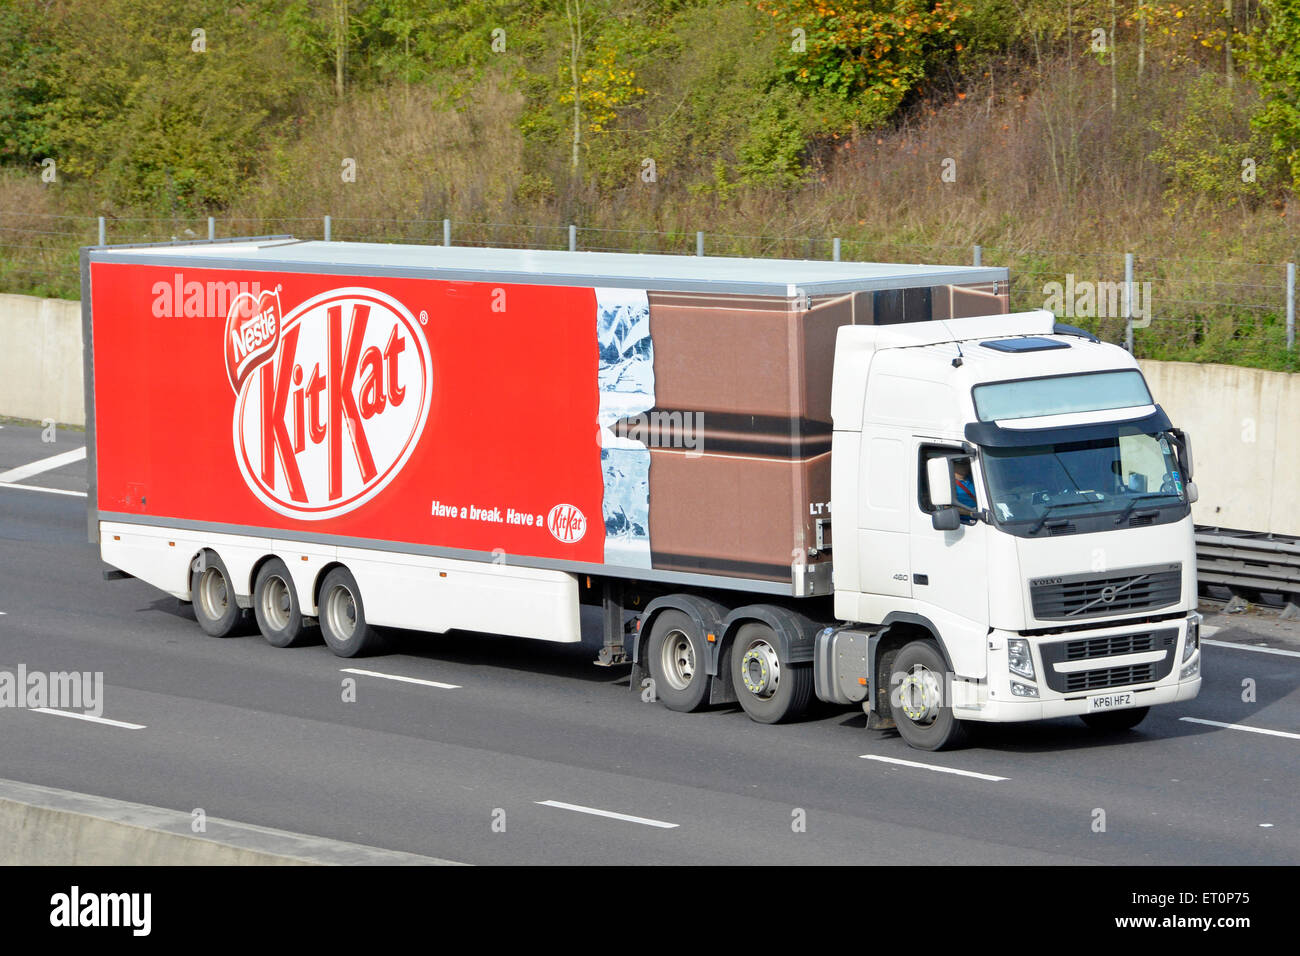 Kit Nestlé Kat chocolat bar & graphiques wrapper sur le côté de la remorque articulée produit publicitaire derrière camion hgv conduite sur l'autoroute britannique Banque D'Images